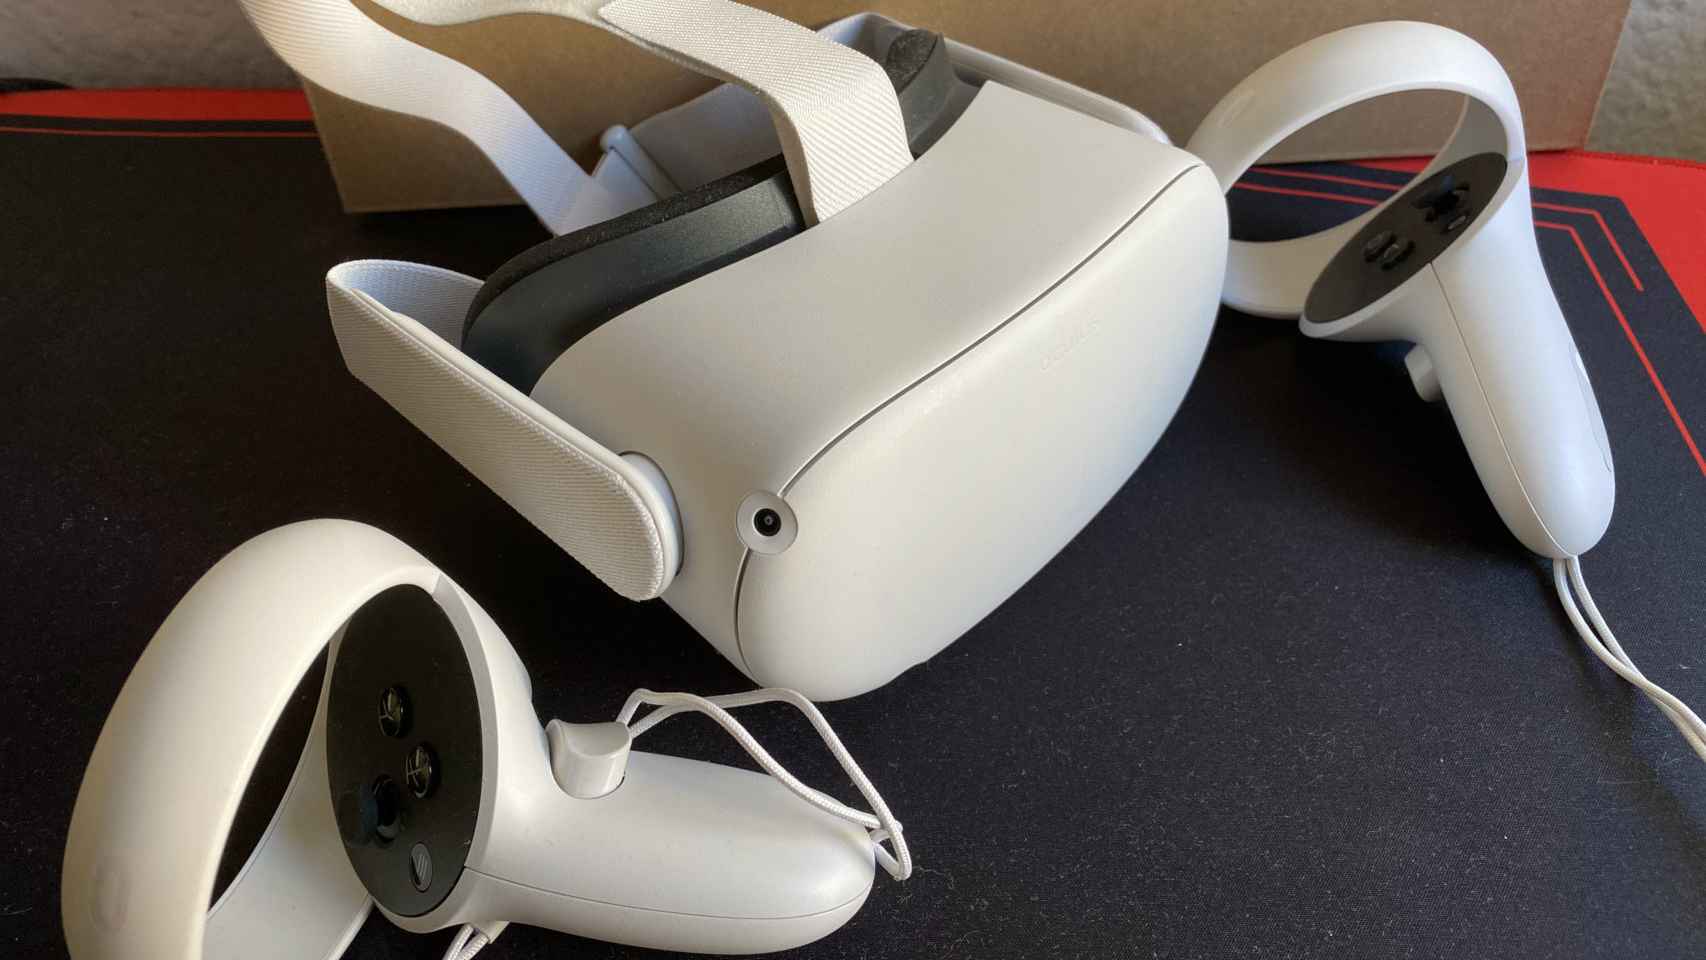 Nuevo Oculus Quest 2: la realidad virtual de Facebook ahora es incluso mejor